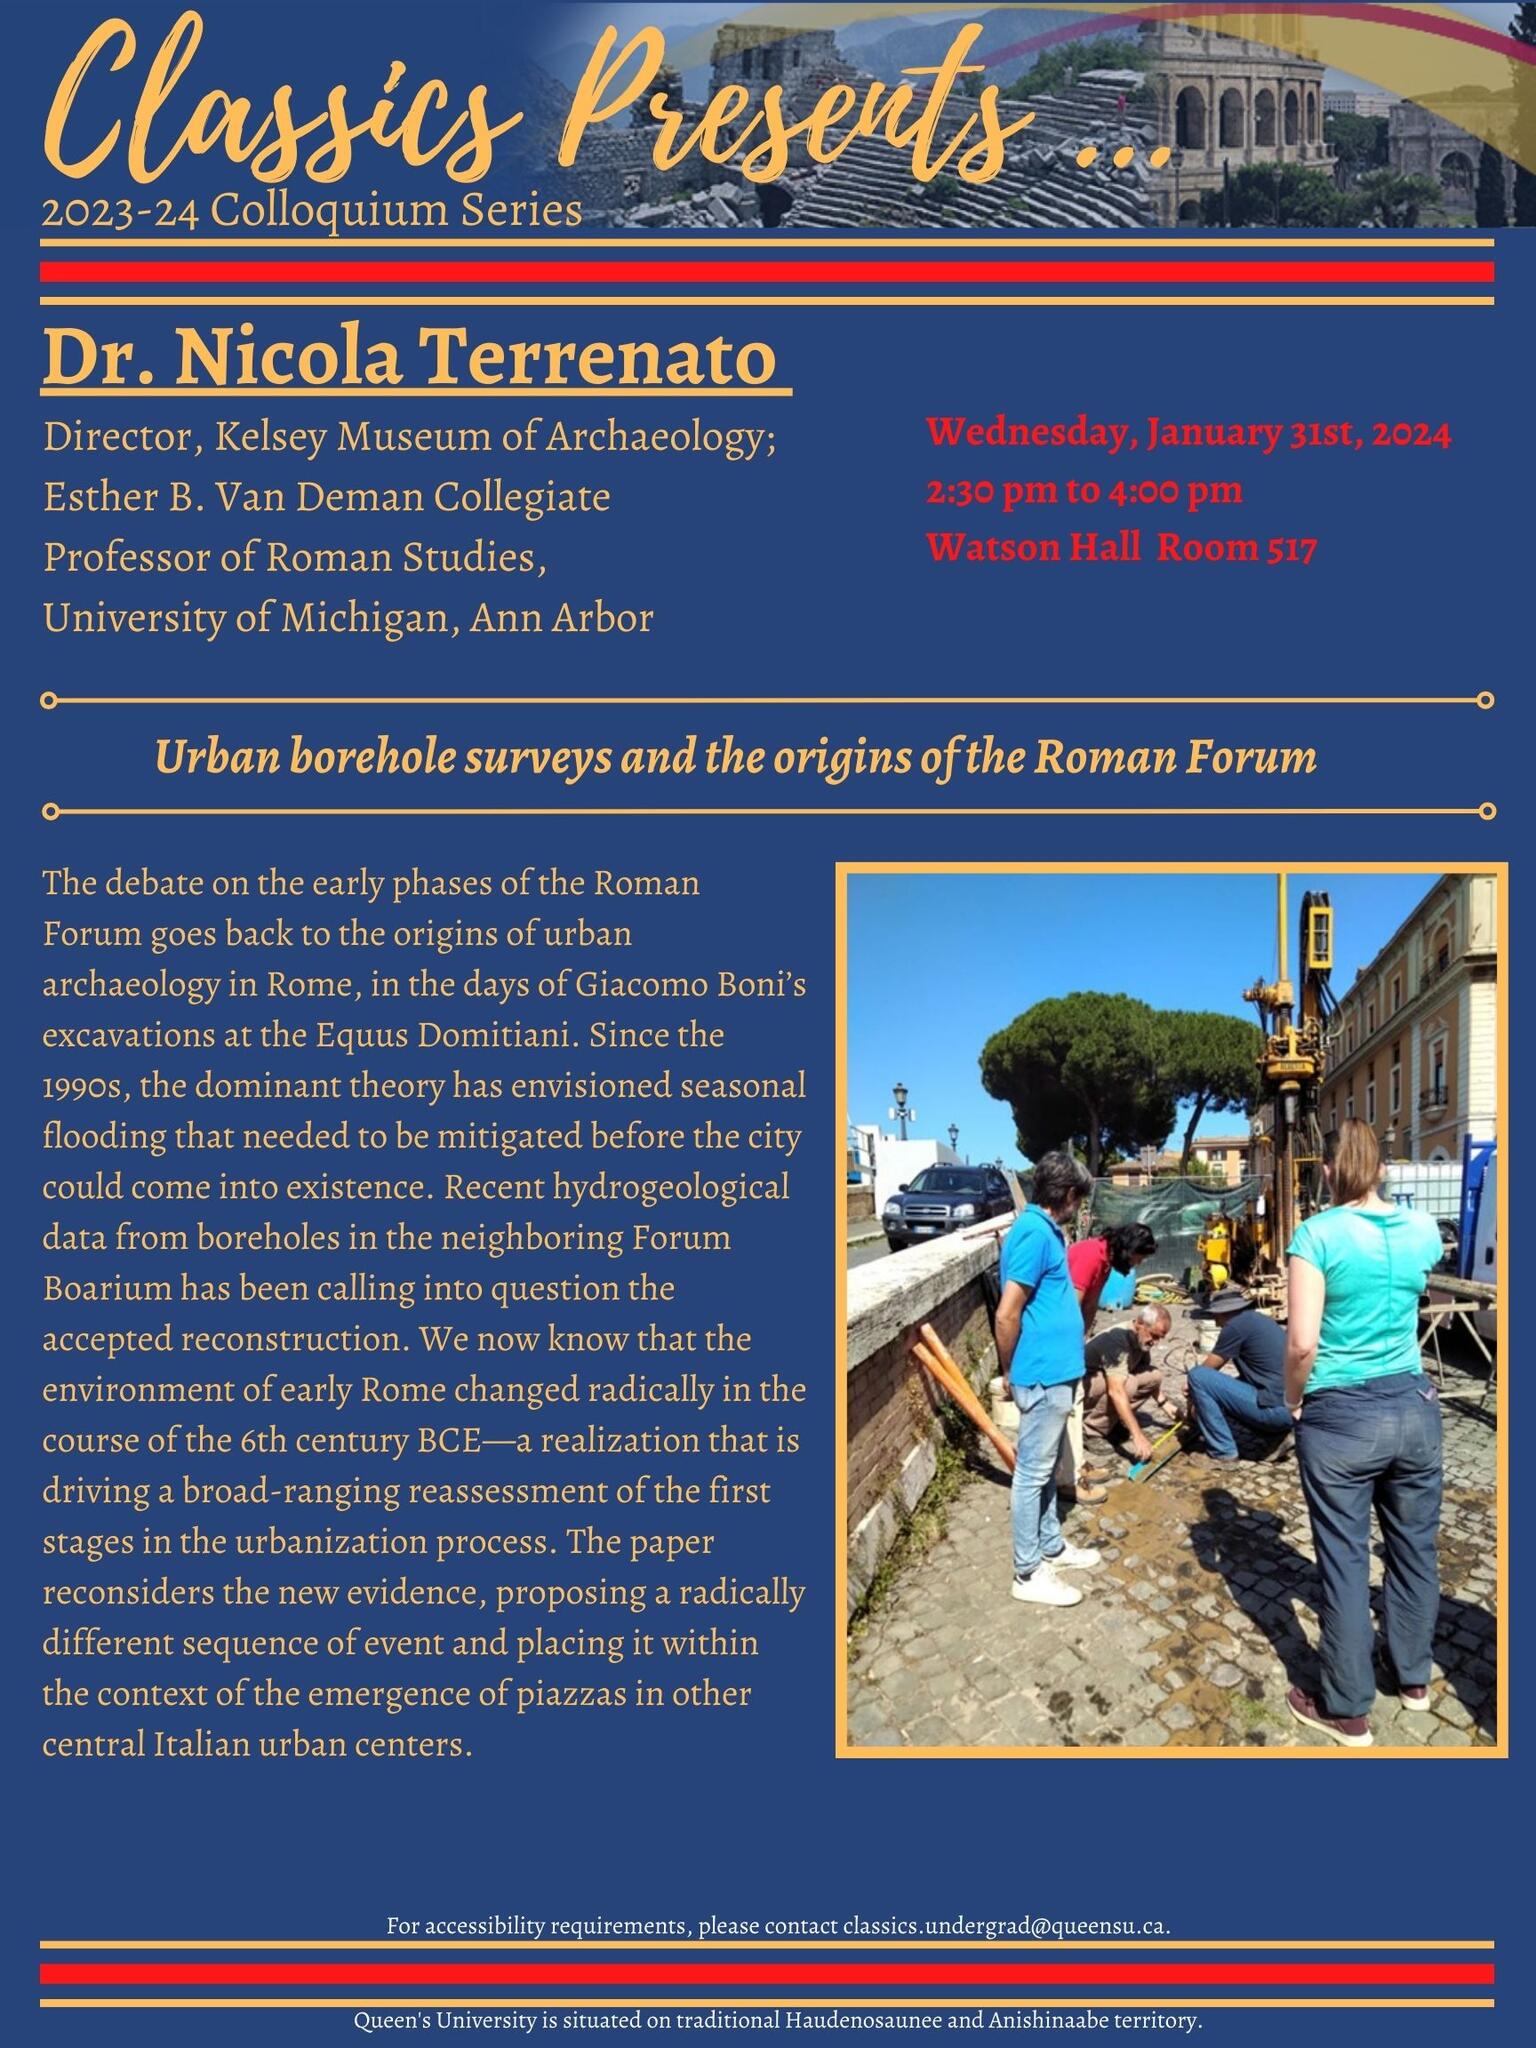 Dr. Nicola Terrenato 